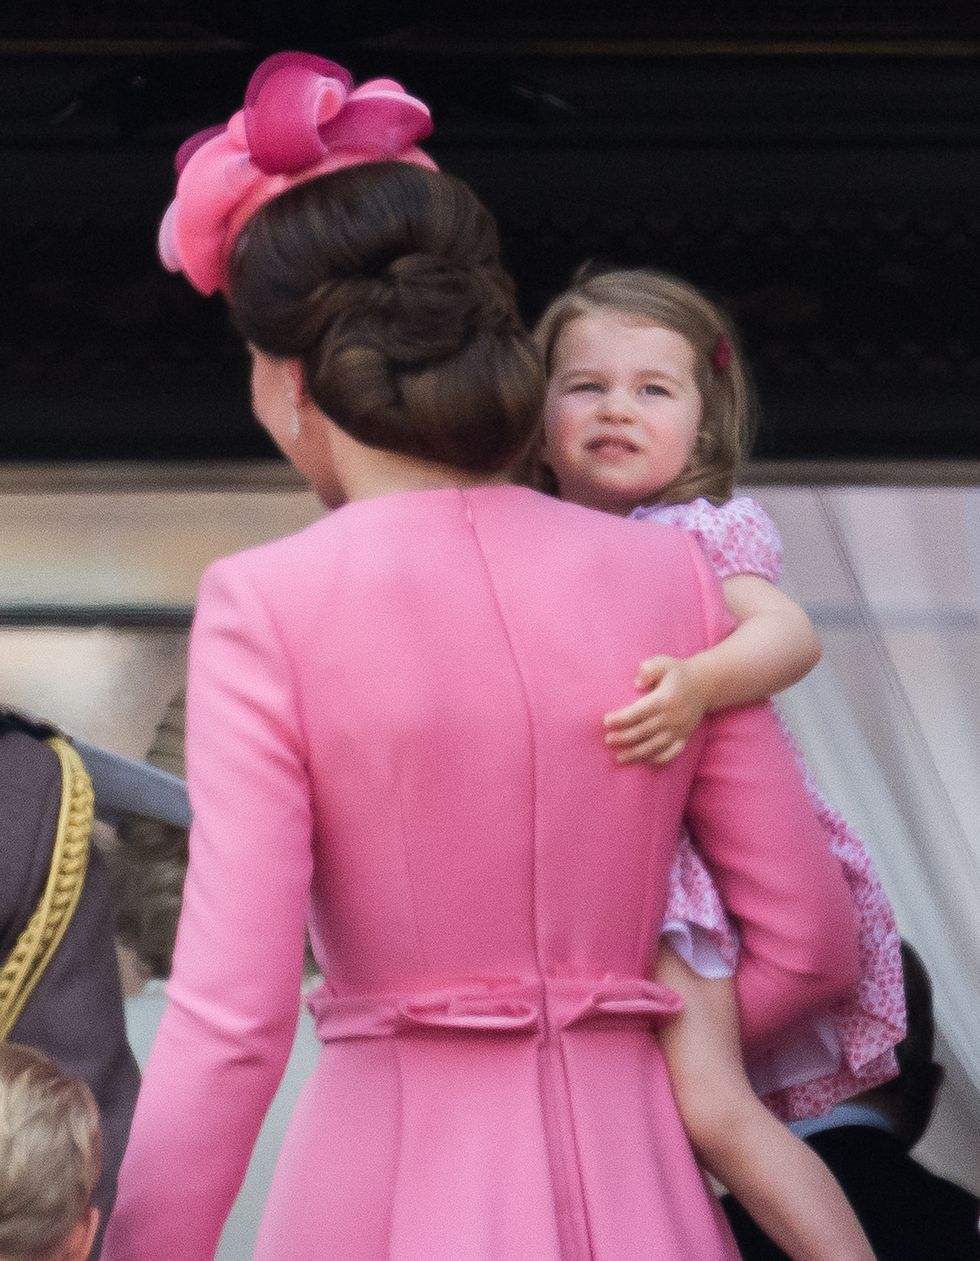 Di spalle Kate Middleton con in braccio la pricipessa Charlotte entrambe con un abito rosa